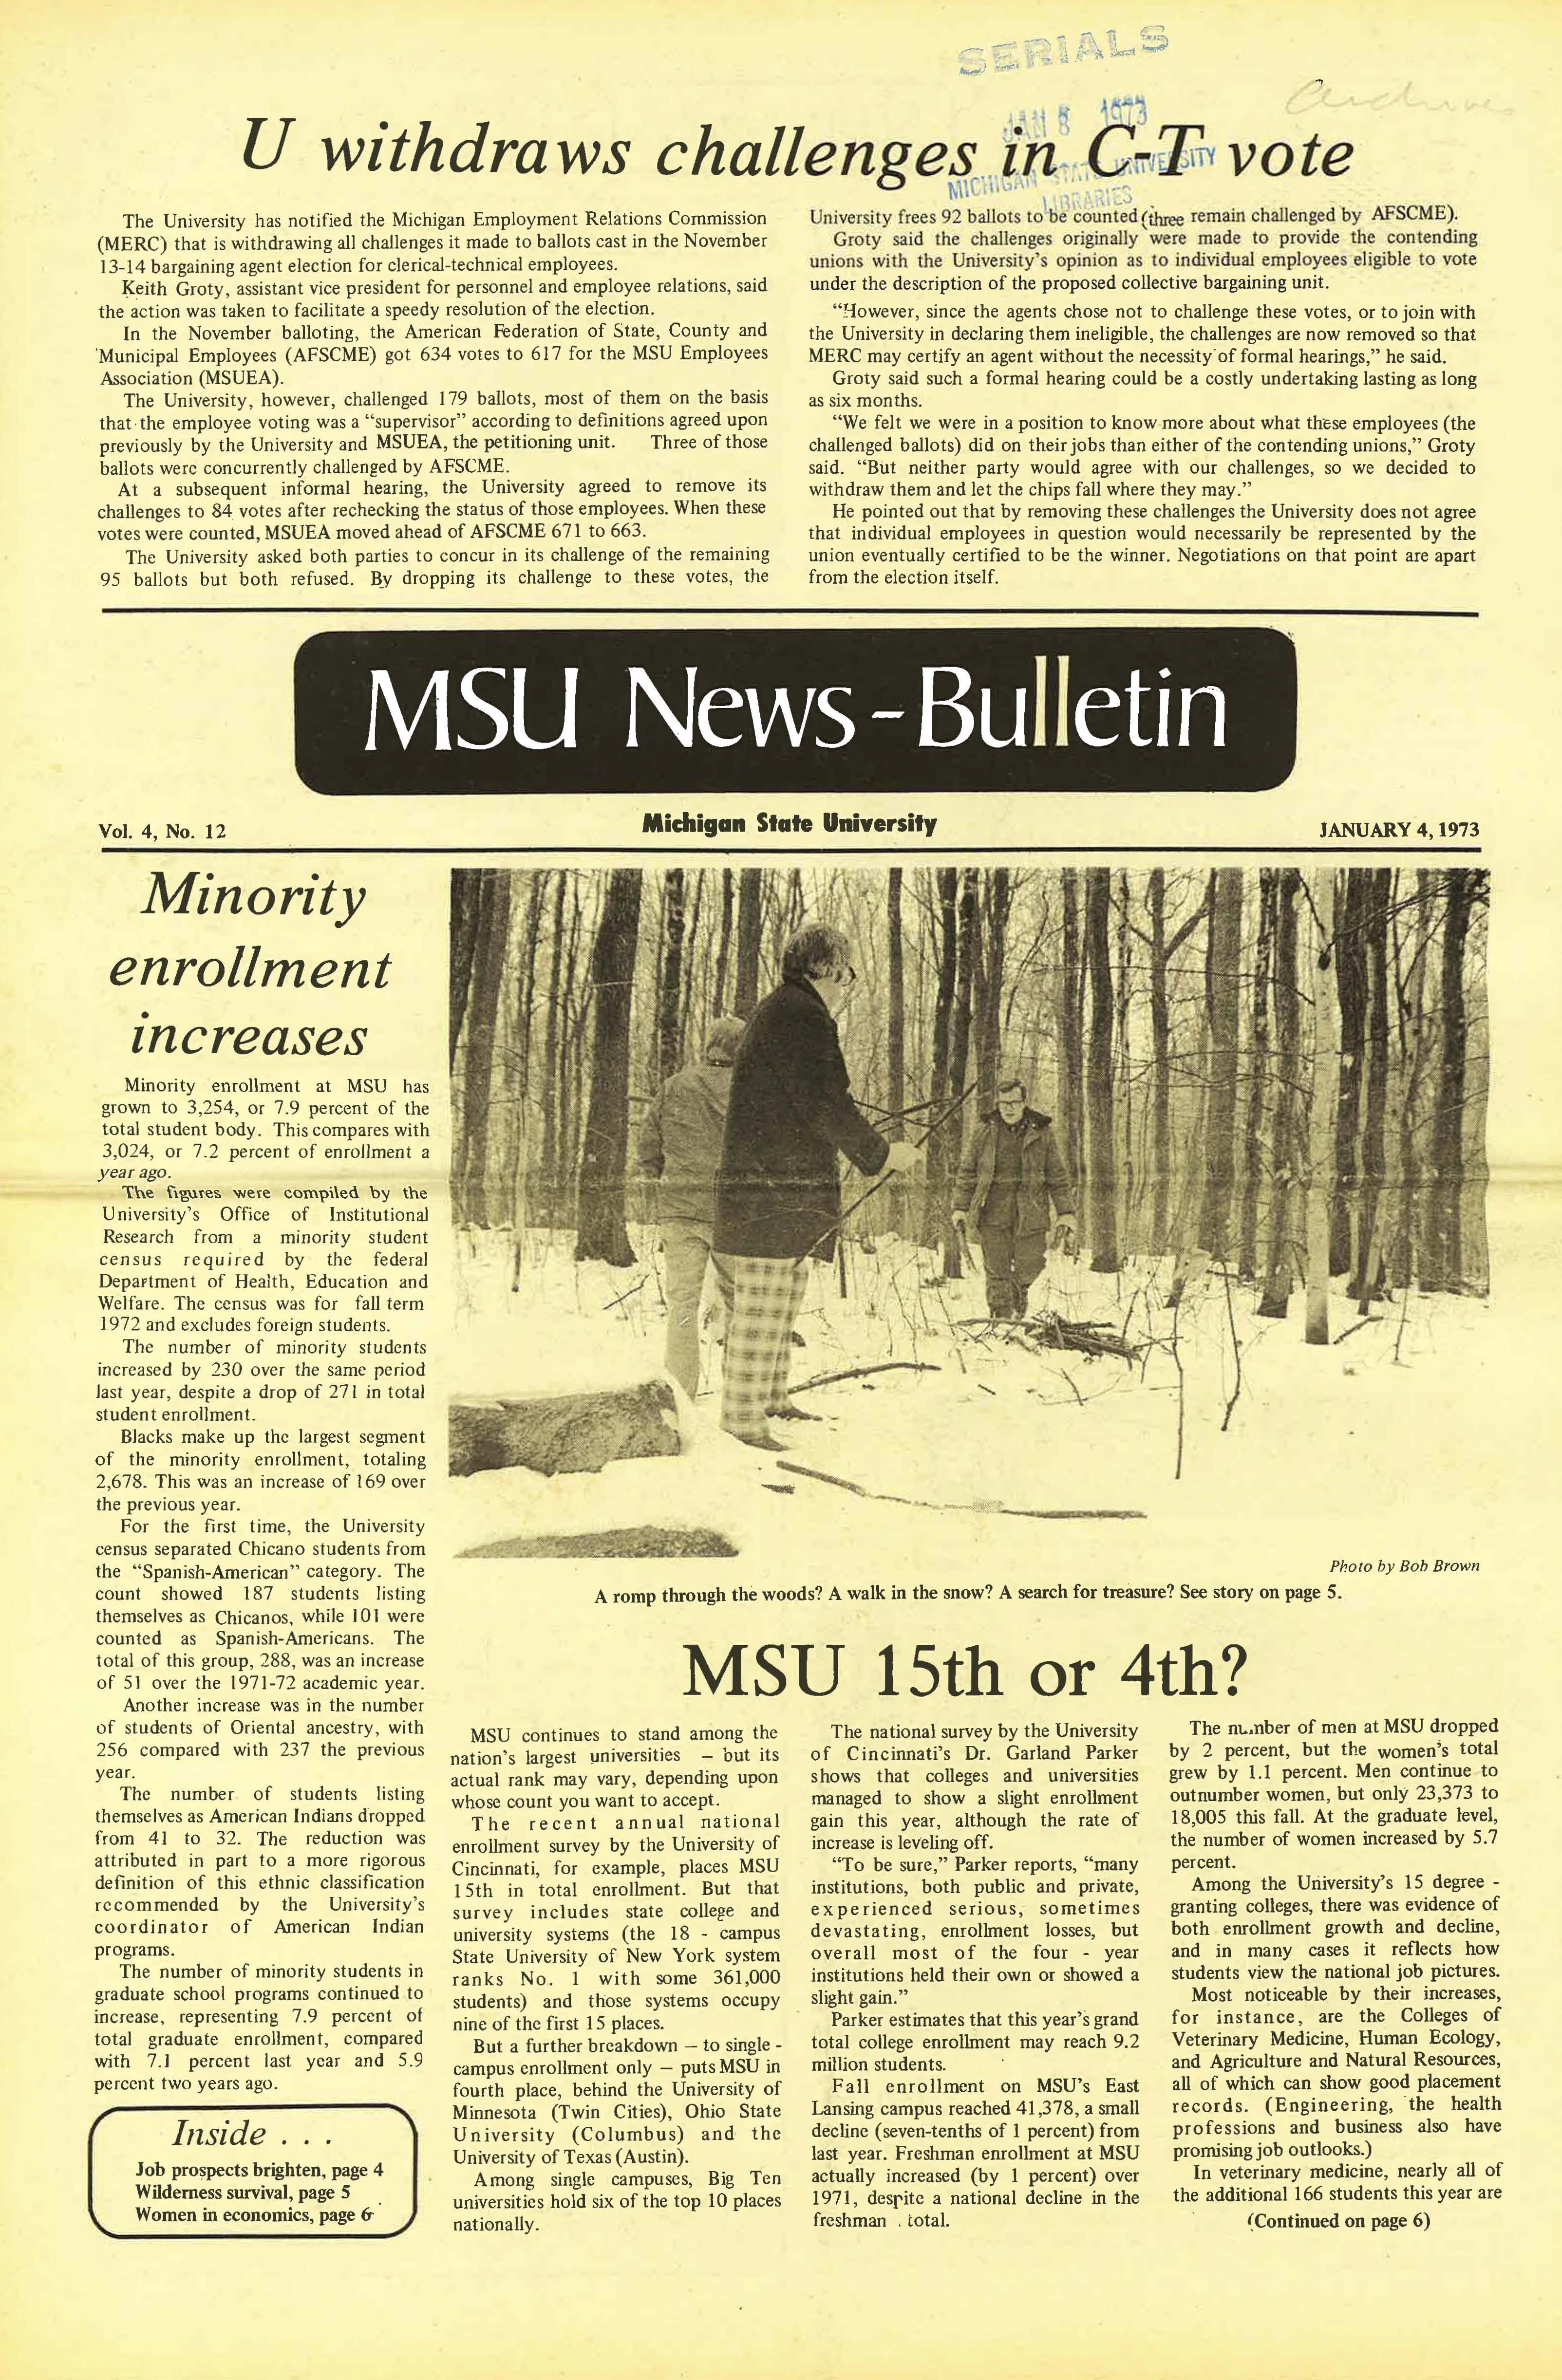 MSU News Bulletin, vol. 4, No. 26, April 26, 1973